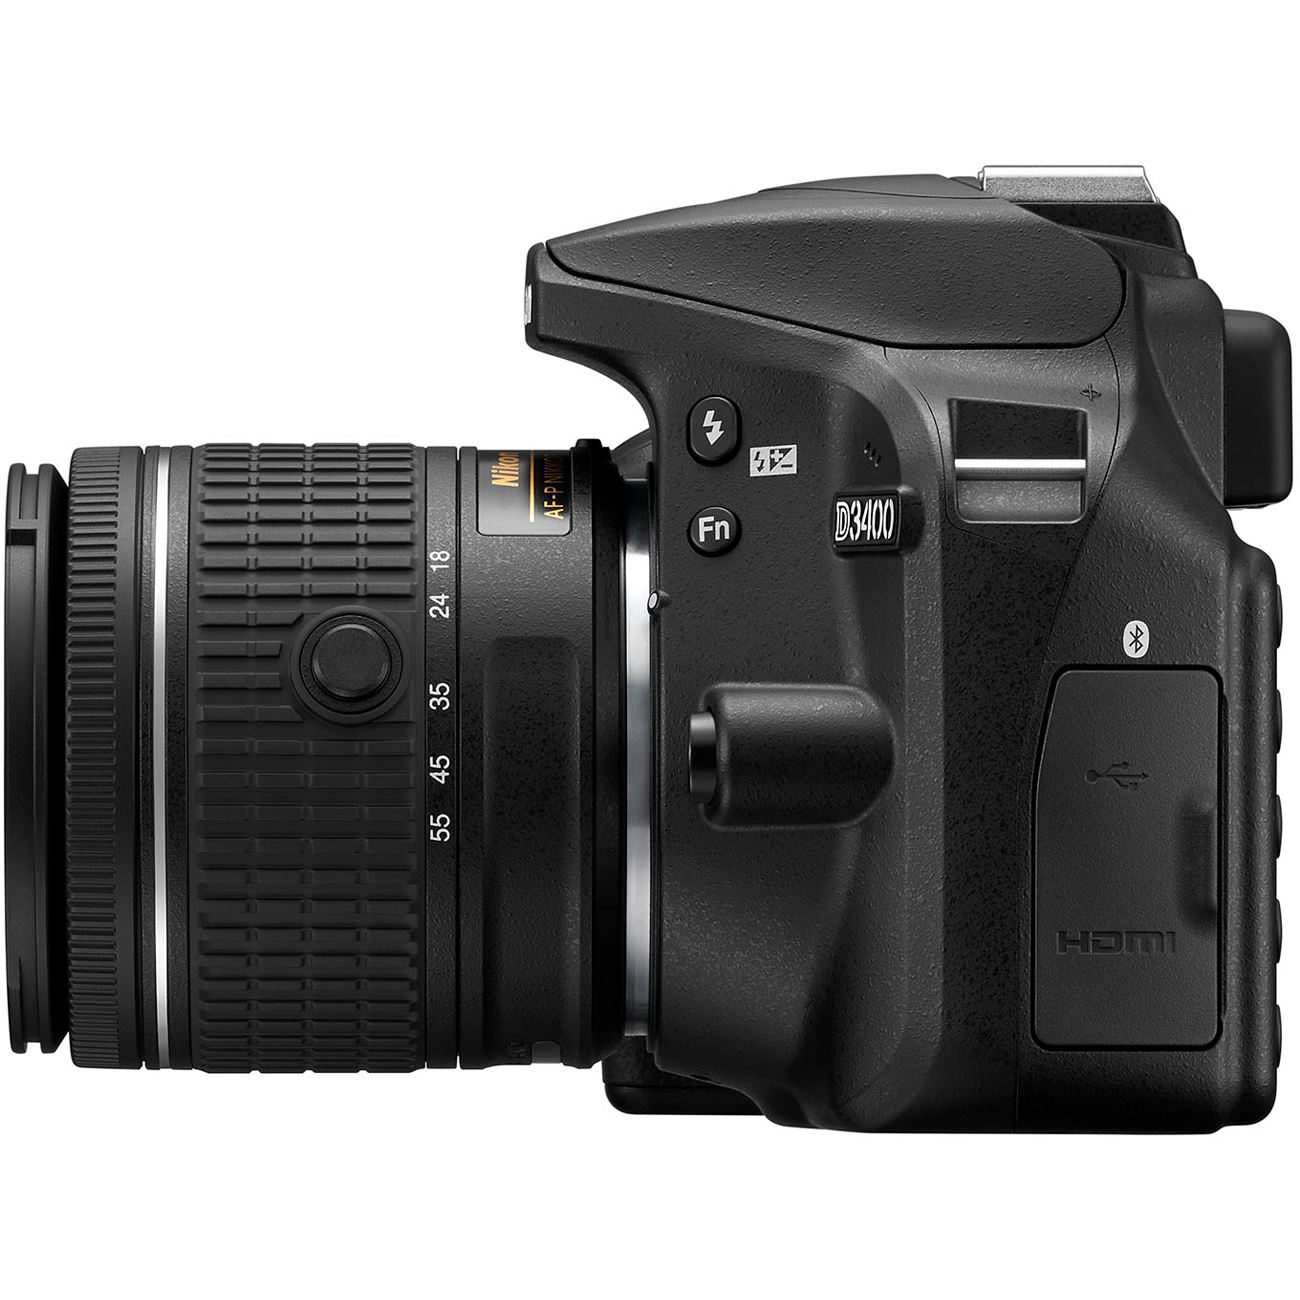 Nikon D3400/D3500 DSLR Camera with 18:55mm Lens (Black) & Sigma 70:300mm SLD DG Lens Package, Black Bundle 64GB SDXC Memory Card Supreme Bundle - image 5 of 10